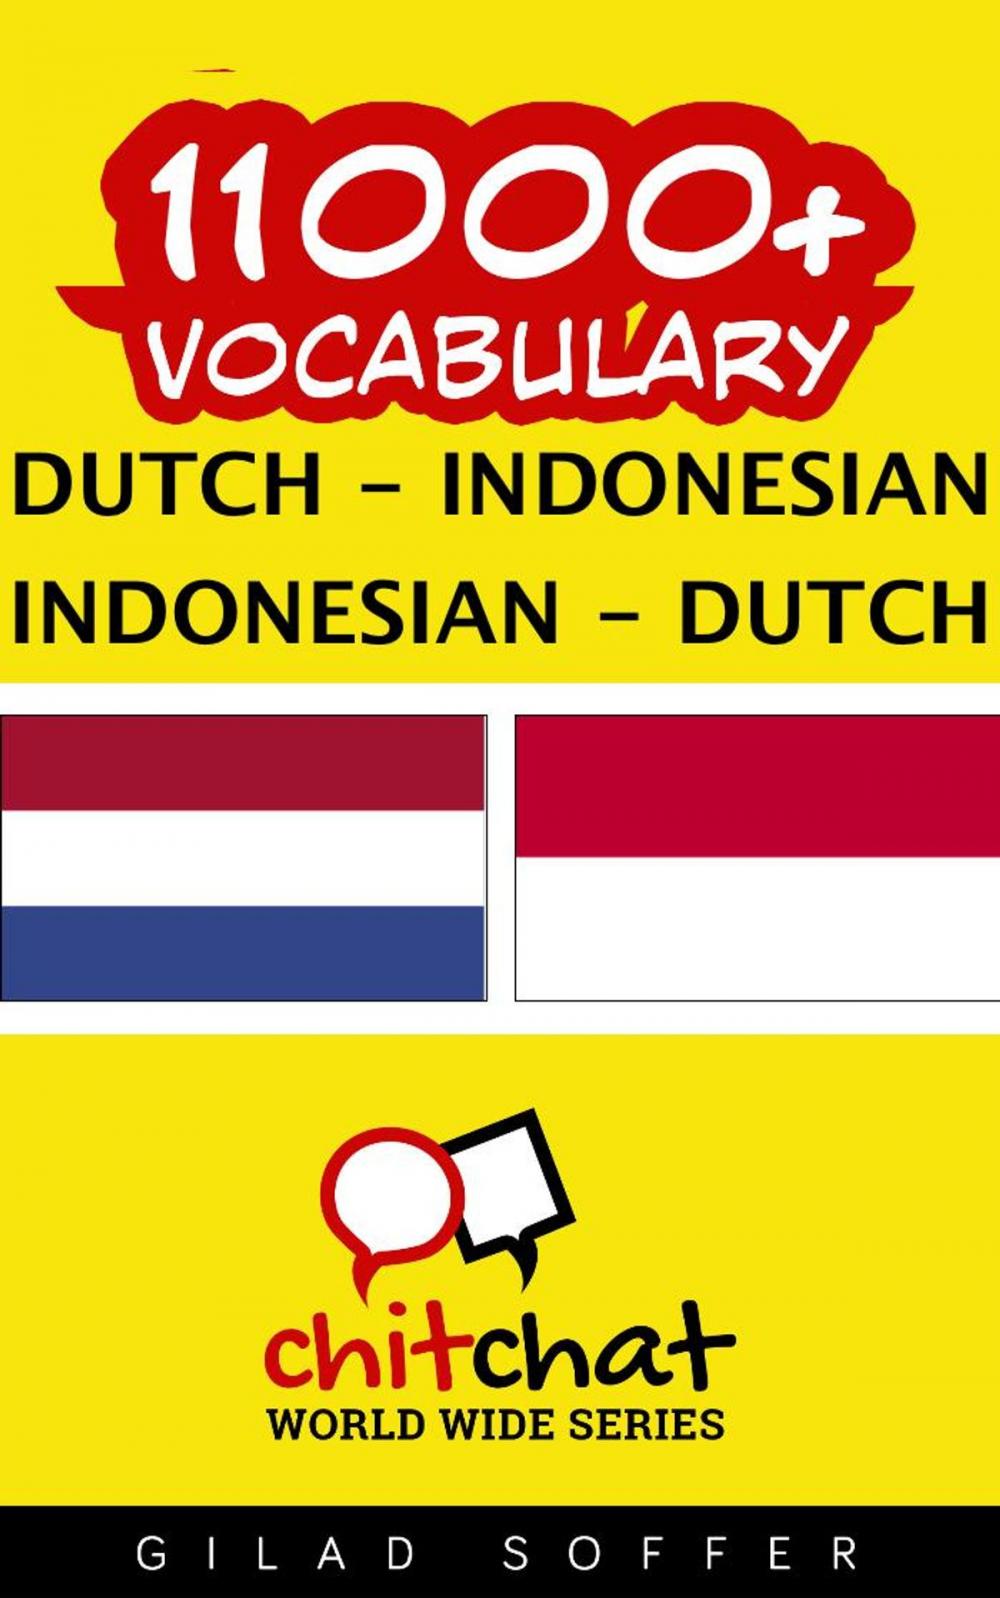 Big bigCover of 11000+ Vocabulary Dutch - Indonesian